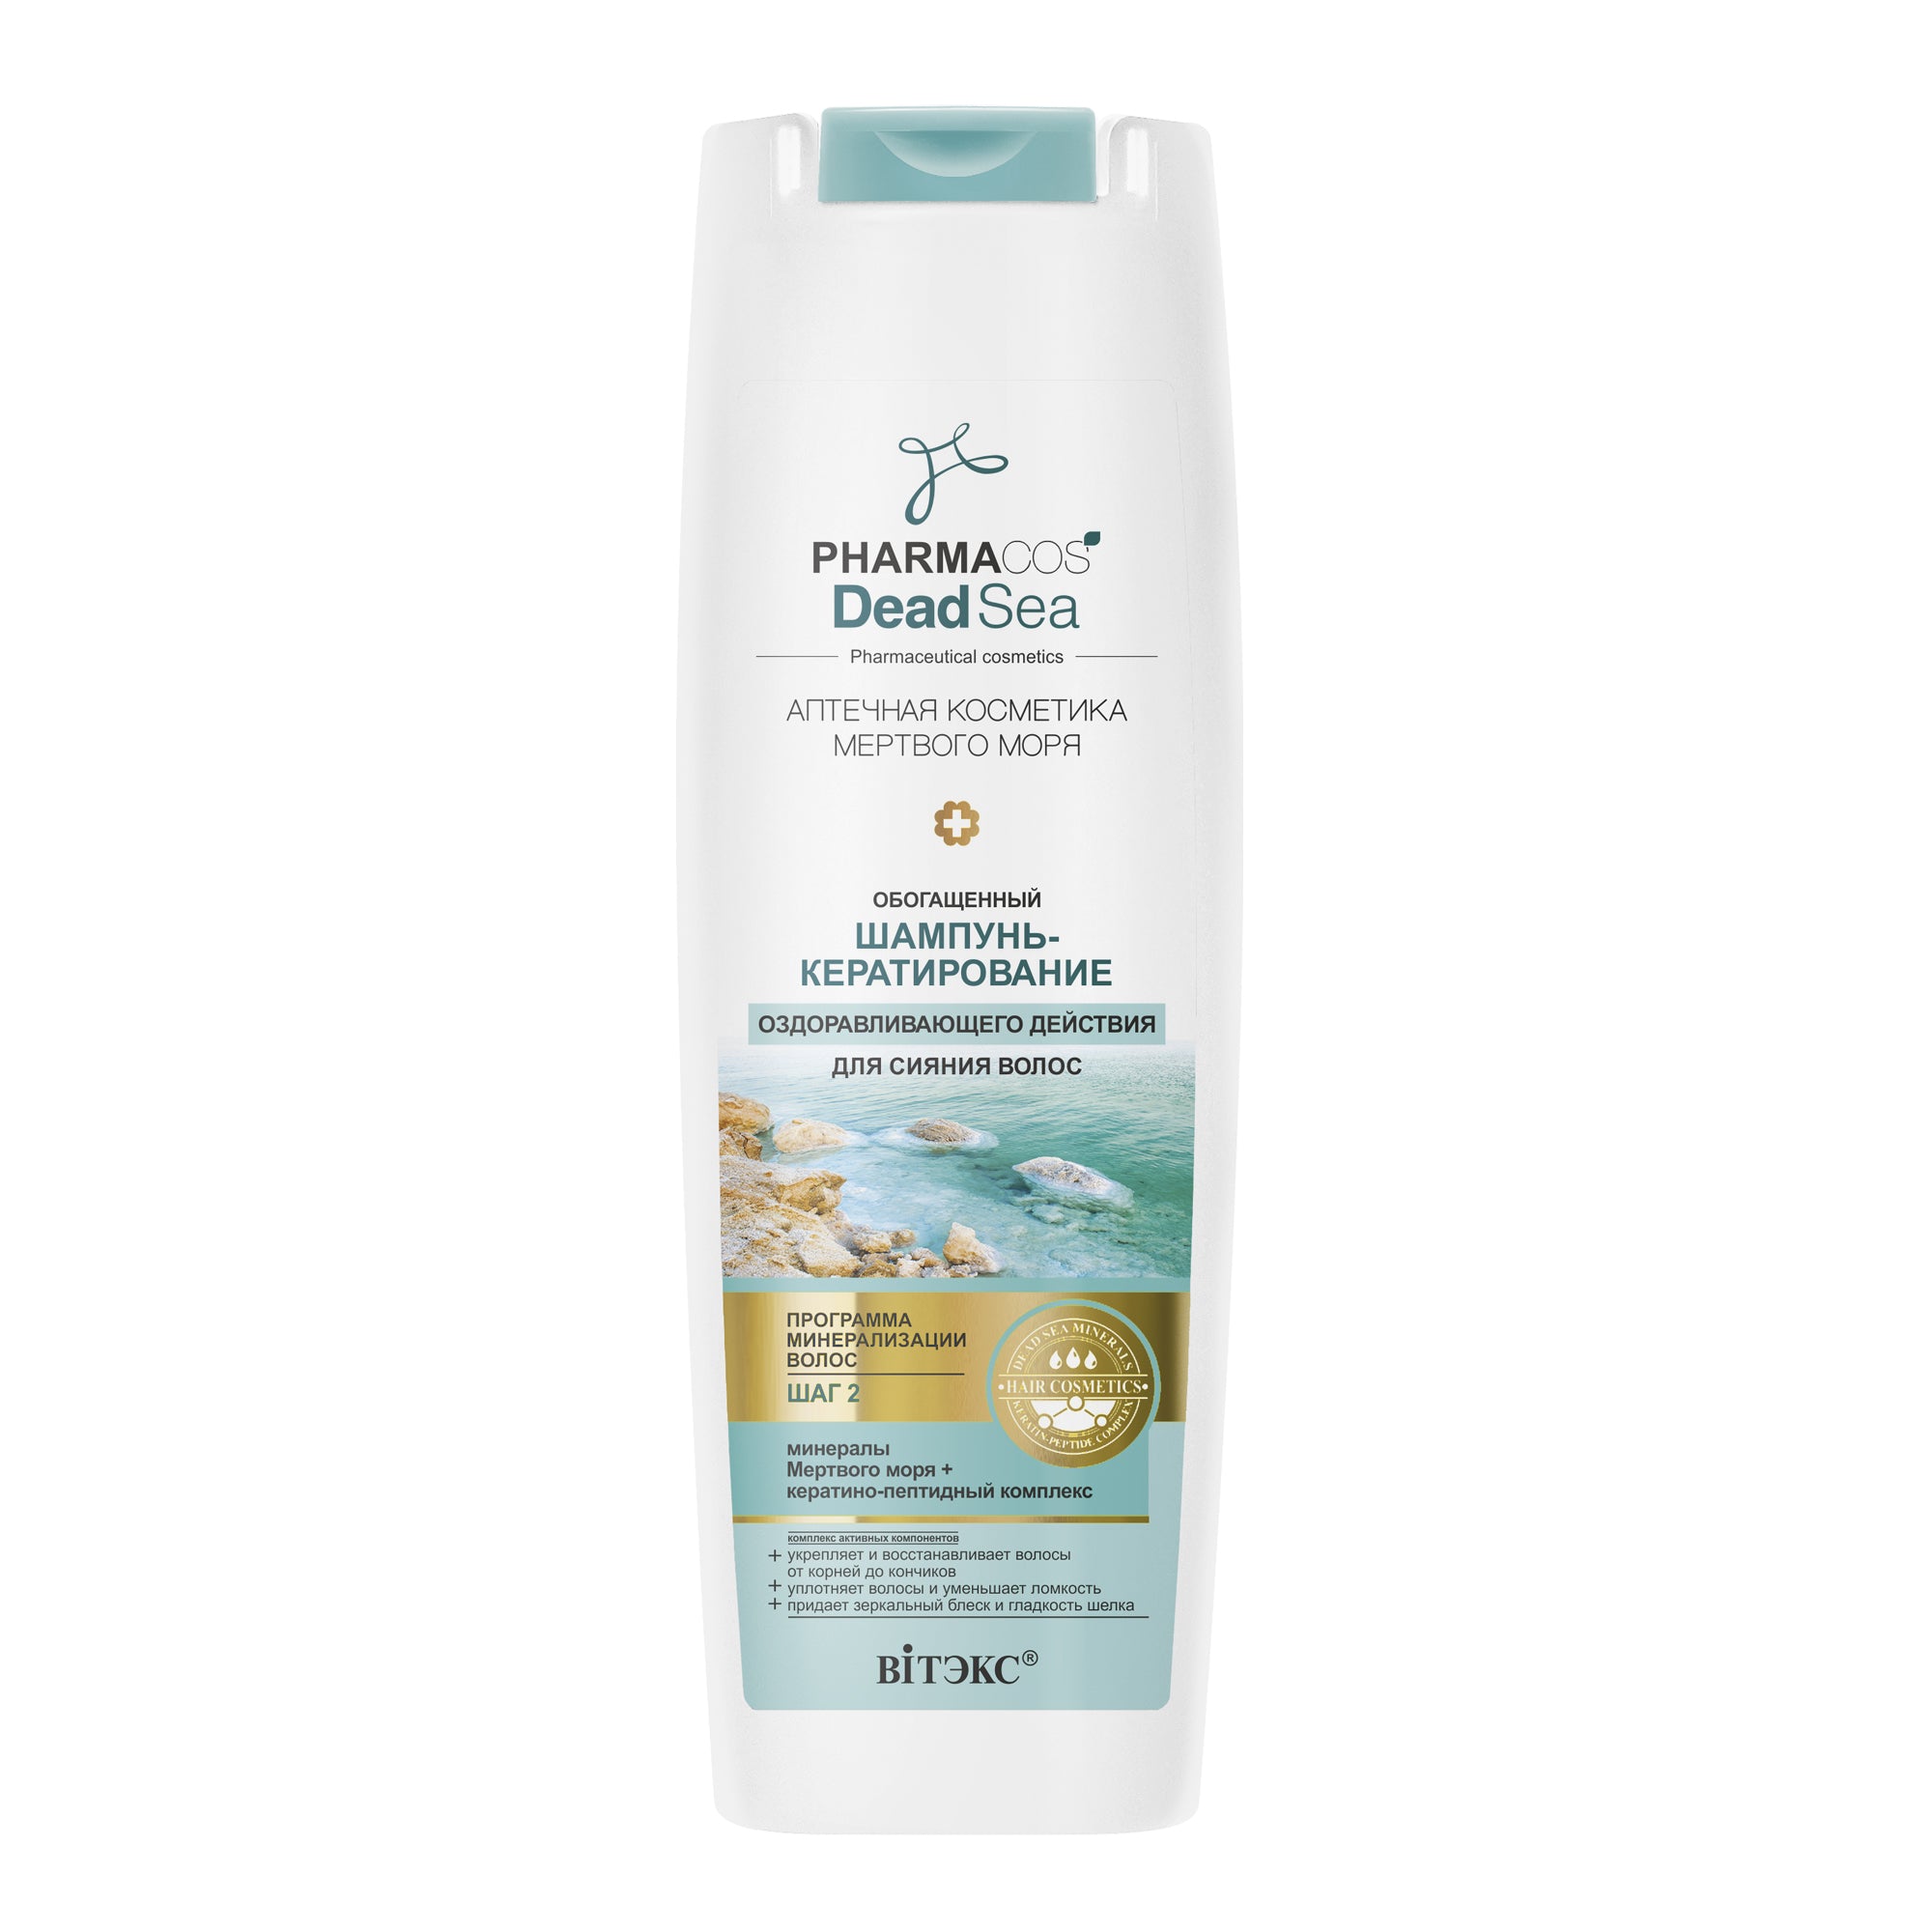 PHARMACOS DEAD SEA Parlak Saçlar İçin Keratinizasyon İyileştirici Şampuan | Auraline Cosmetics